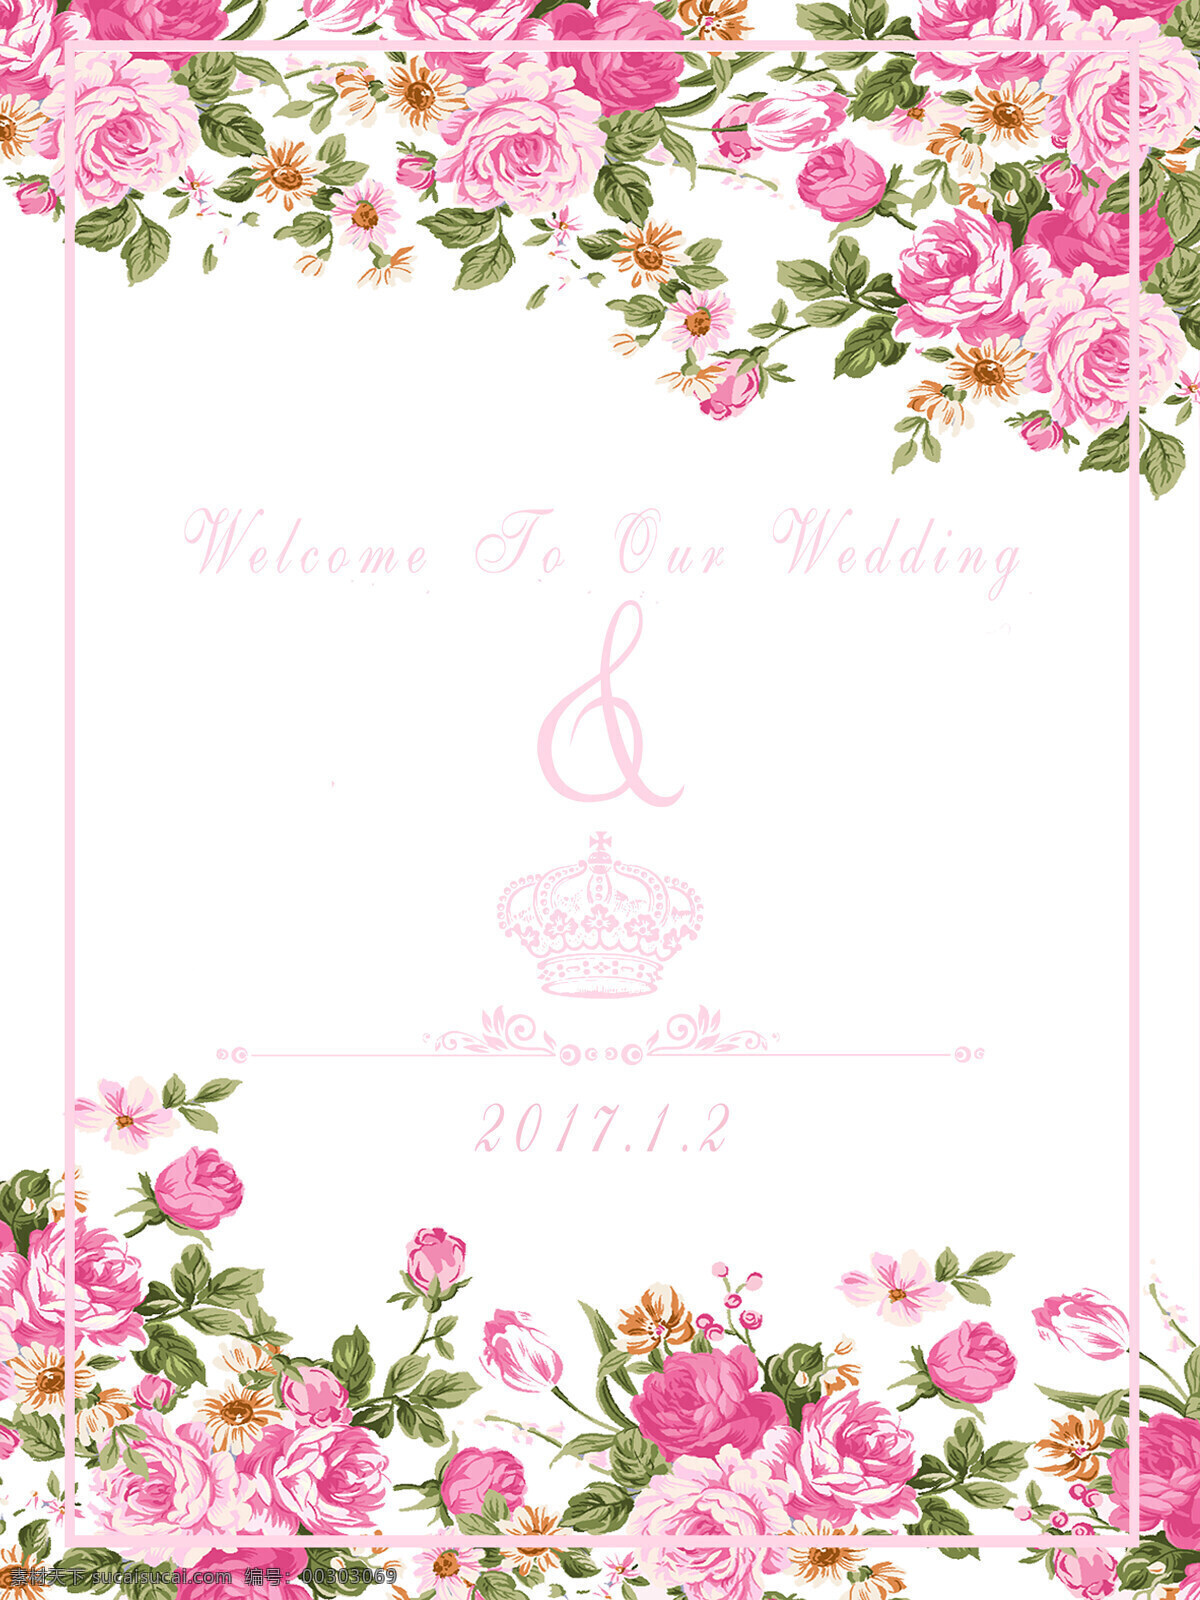 粉色 婚礼 指示牌 粉色花朵 绿色叶子 粉框 皇冠 婚礼指引牌 底纹边框 花边花纹